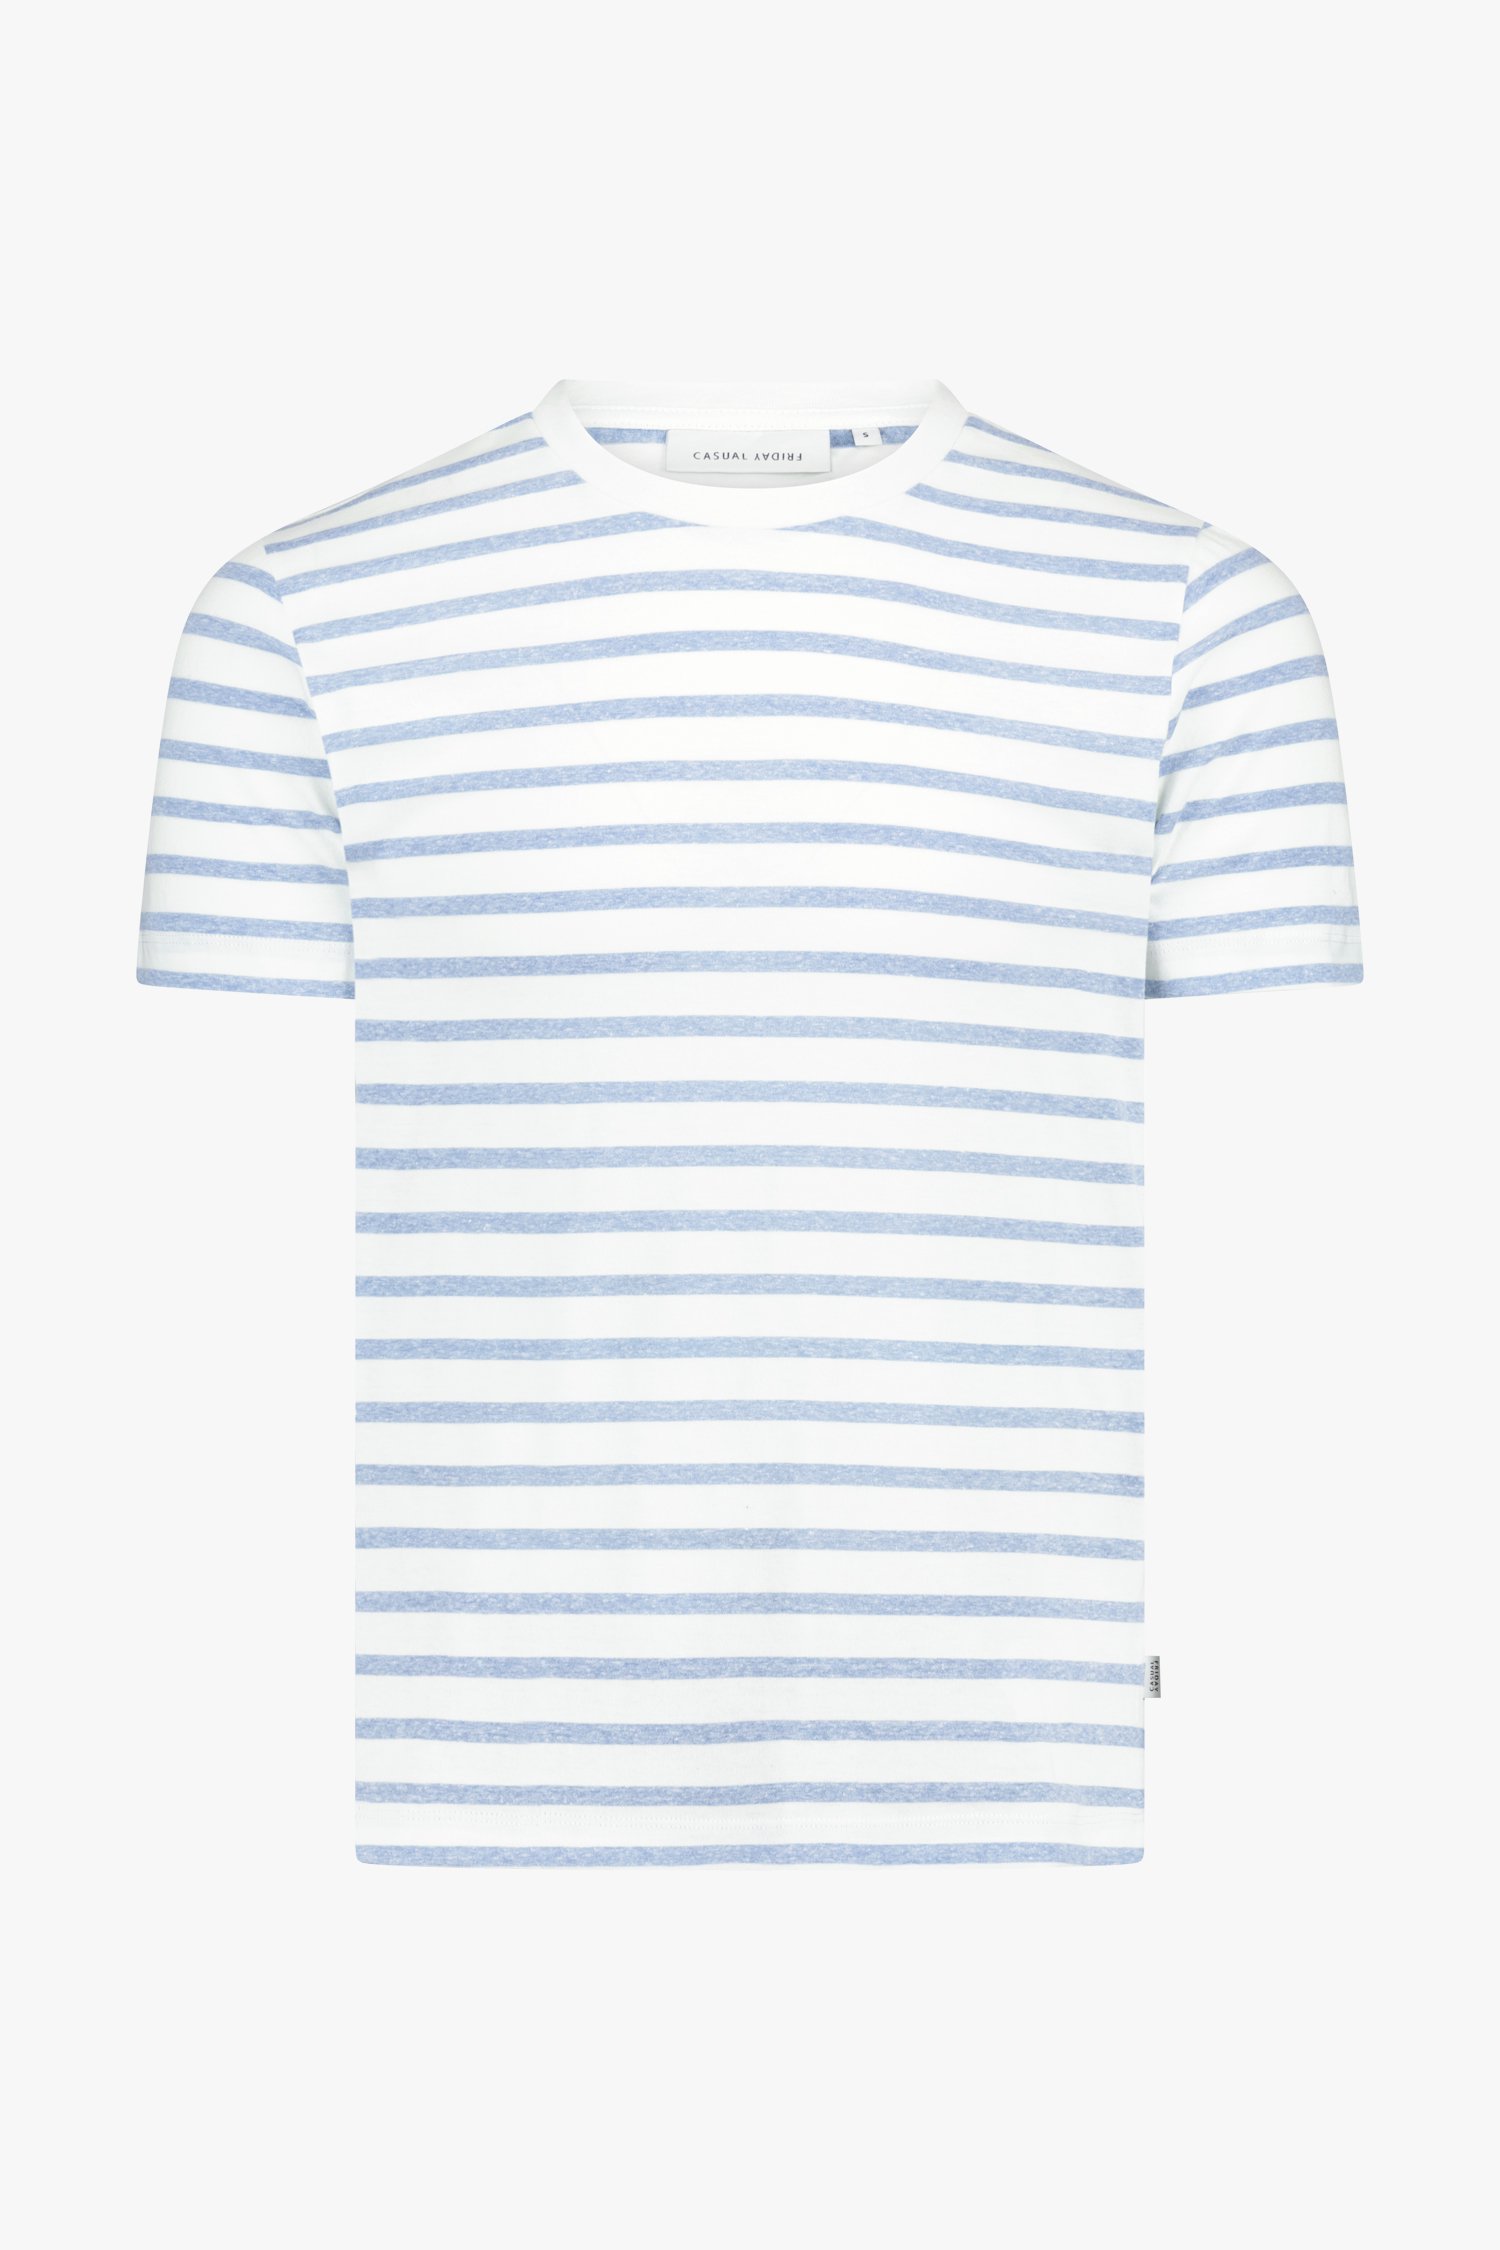 Wit - blauw gestreept Tshirt van Casual Friday voor Heren